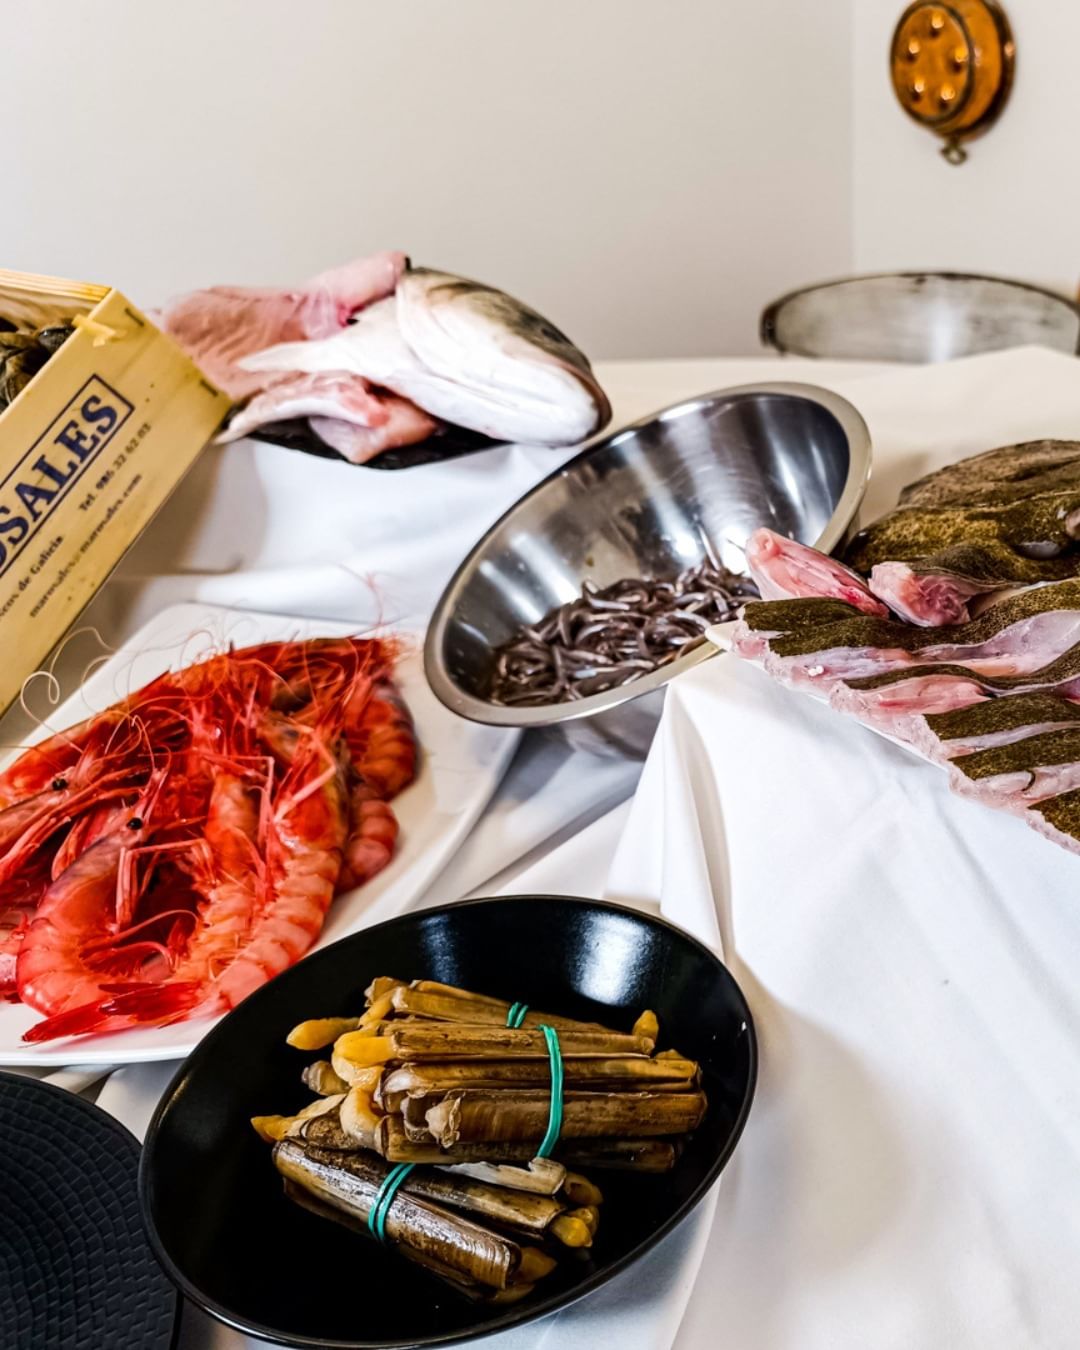 Restaurant Andrea Andorra, cada plat de marisc que oferim és elaborat amb els millors productes que la mar ens ofereix. Des de la frescor dels nostres peixos i mariscs fins a la qualitat excepcional de les nostres carns, tota la nostra matèria primera és seleccionada amb cura per l'Andreia